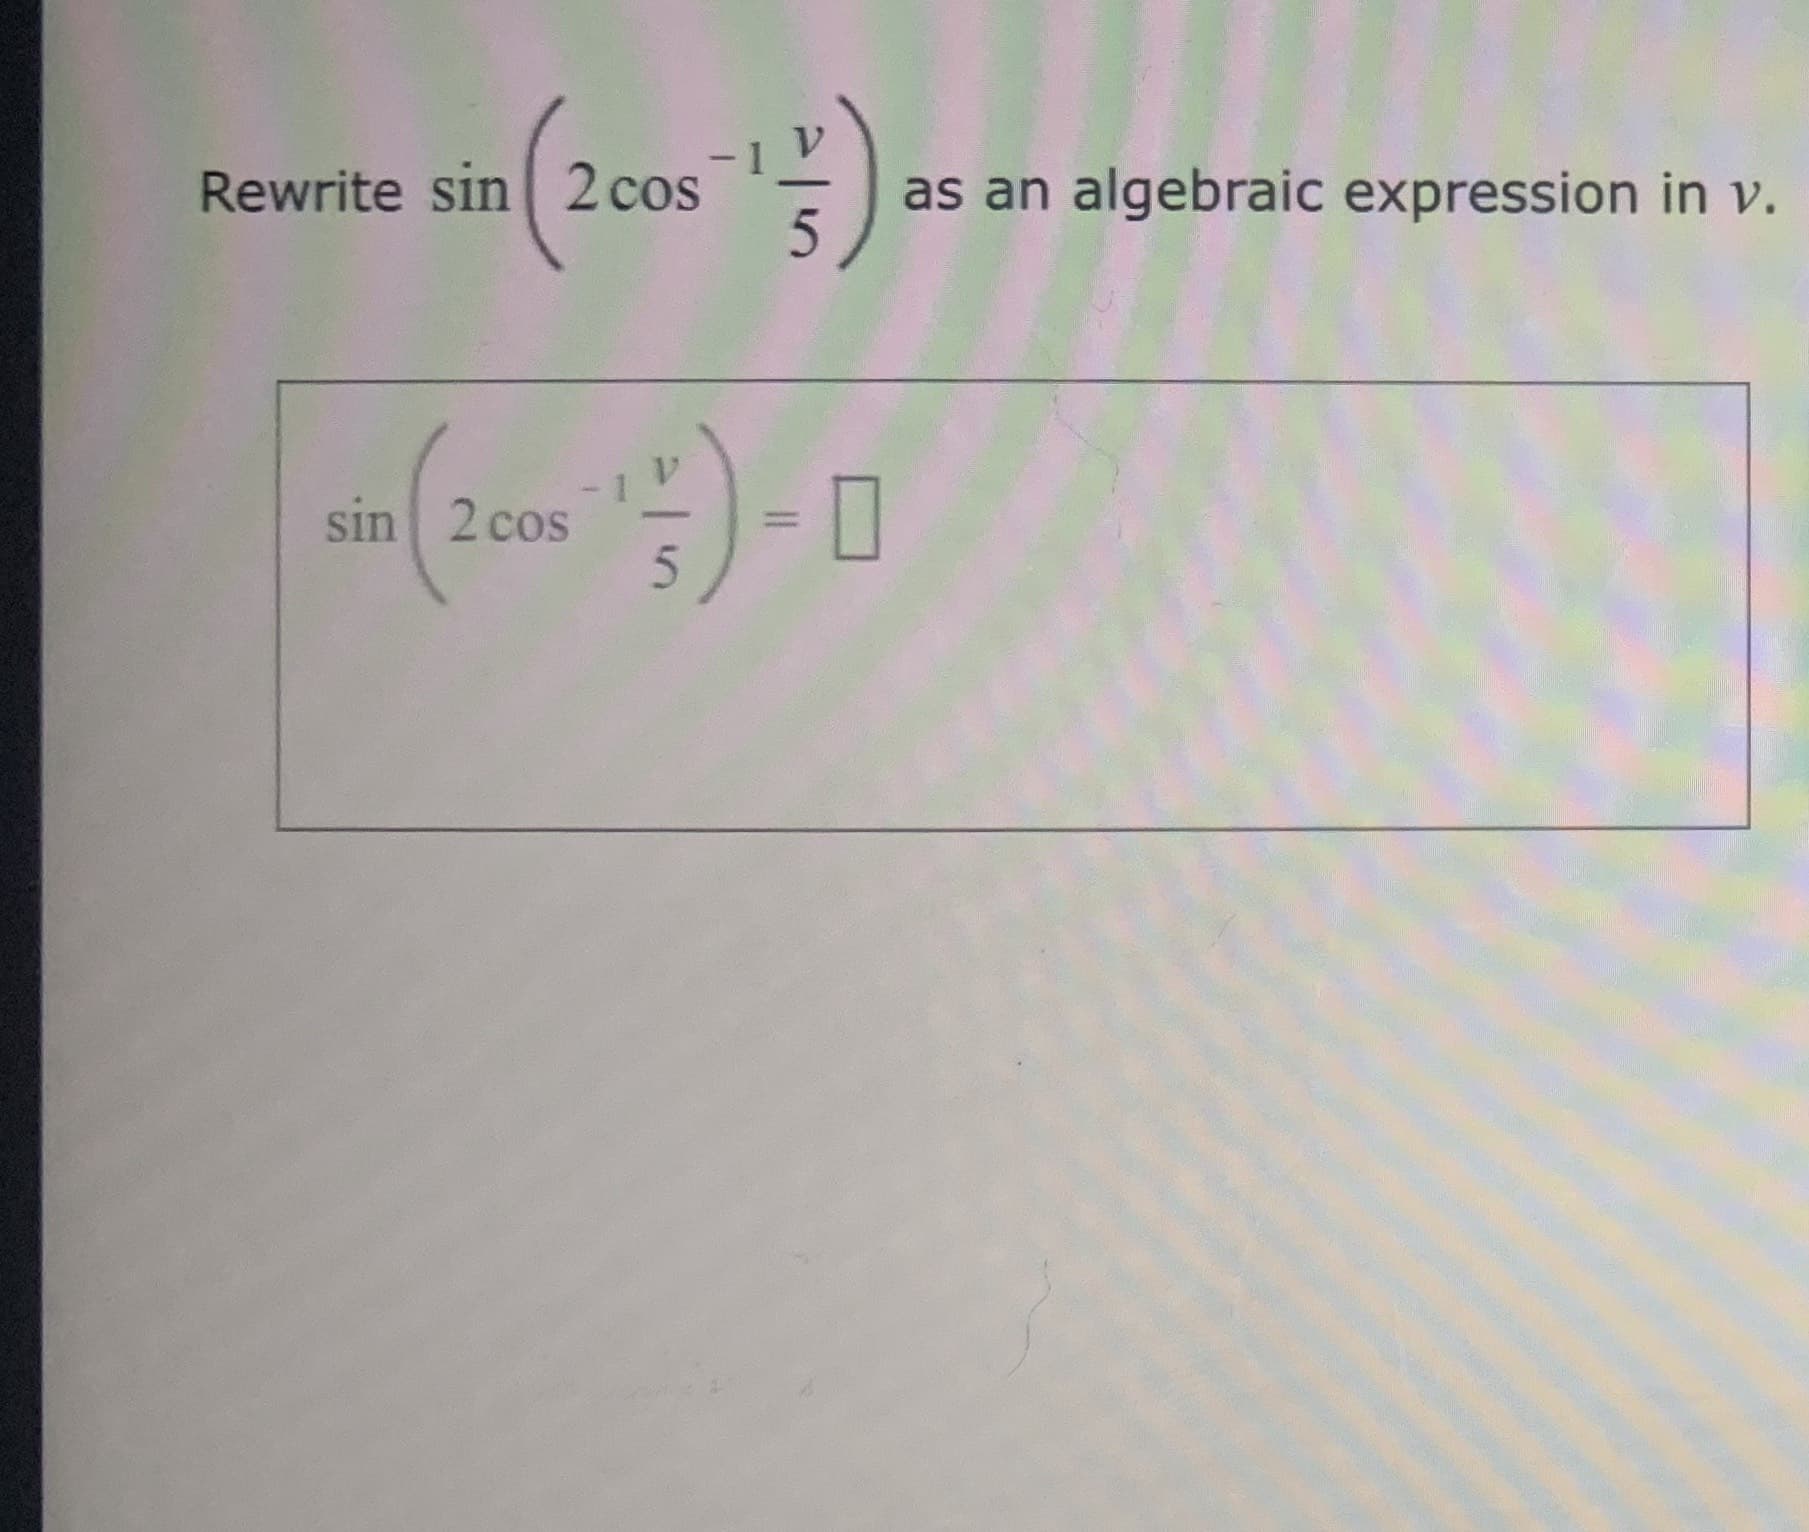 Rewrite sin 2 cos
as an algebraic expression in v.
5
